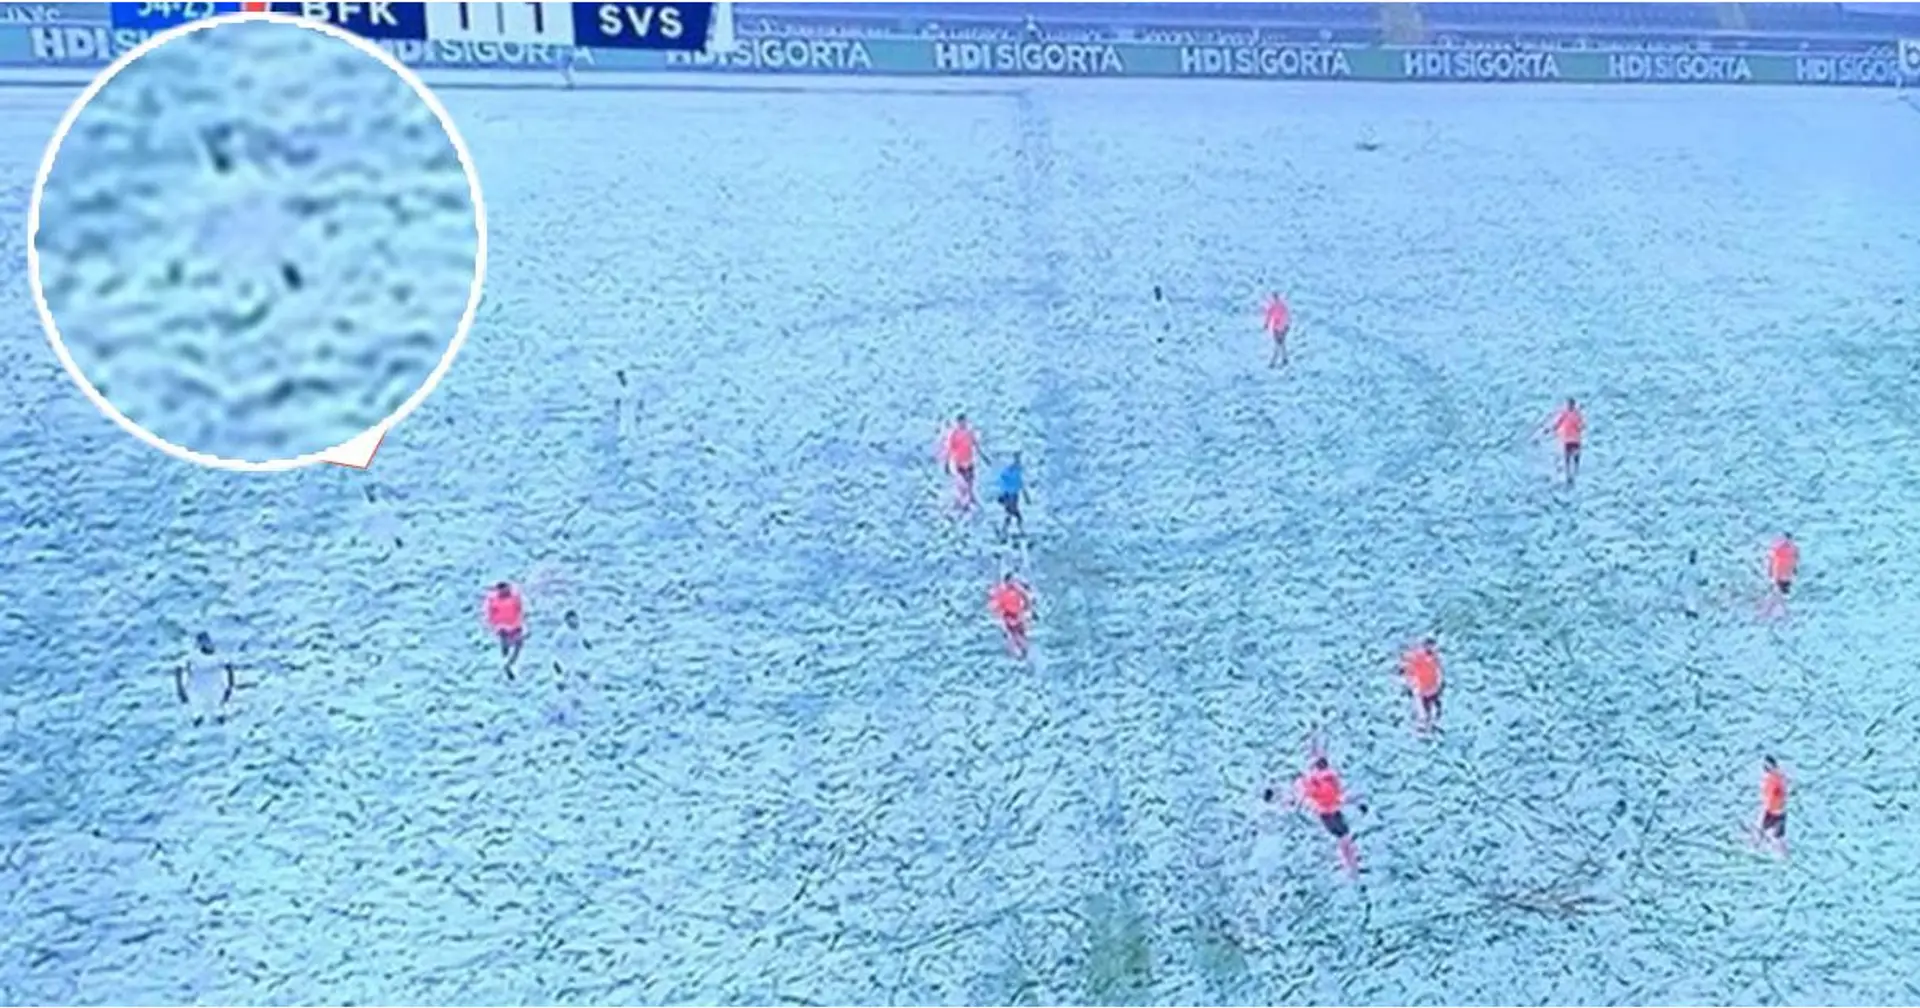 La squadra turca indossa kit bianchi in una giornata di neve, i giocatori scompaiono letteralmente